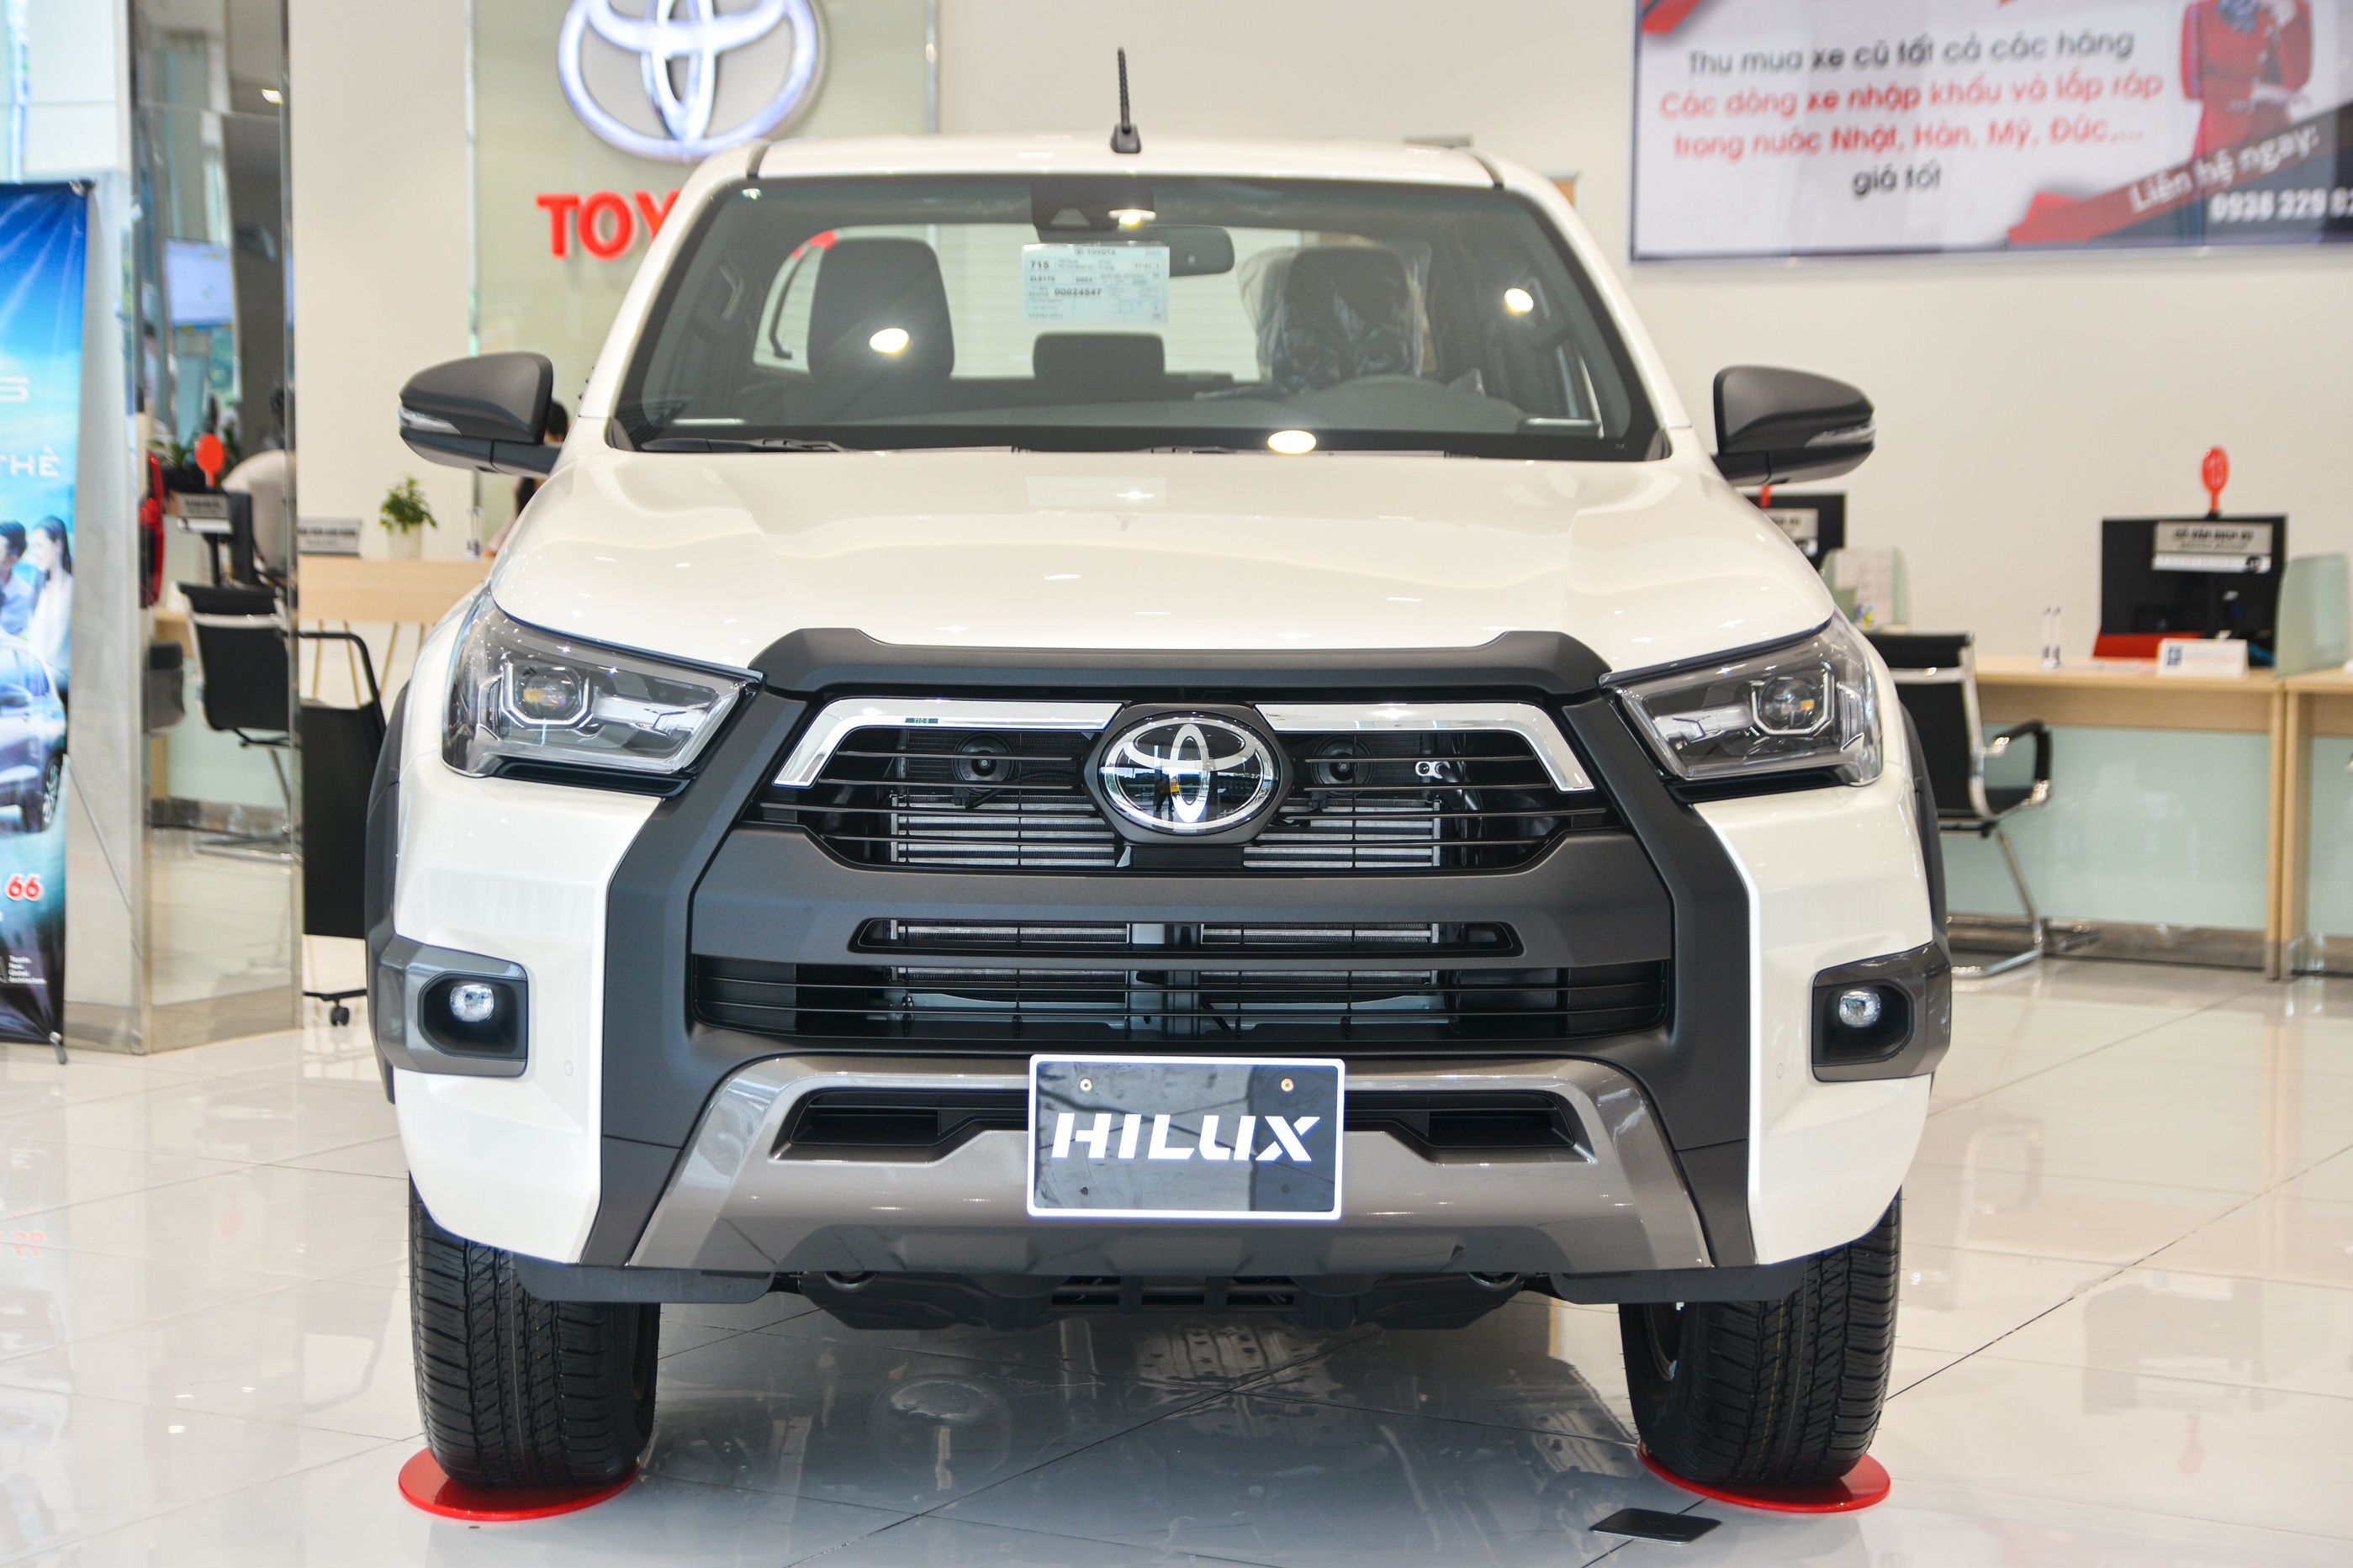 Lượng Toyota Hilux về nhỏ giọt, đại lý cam kết không kèm ''lạc'' - ảnh 2